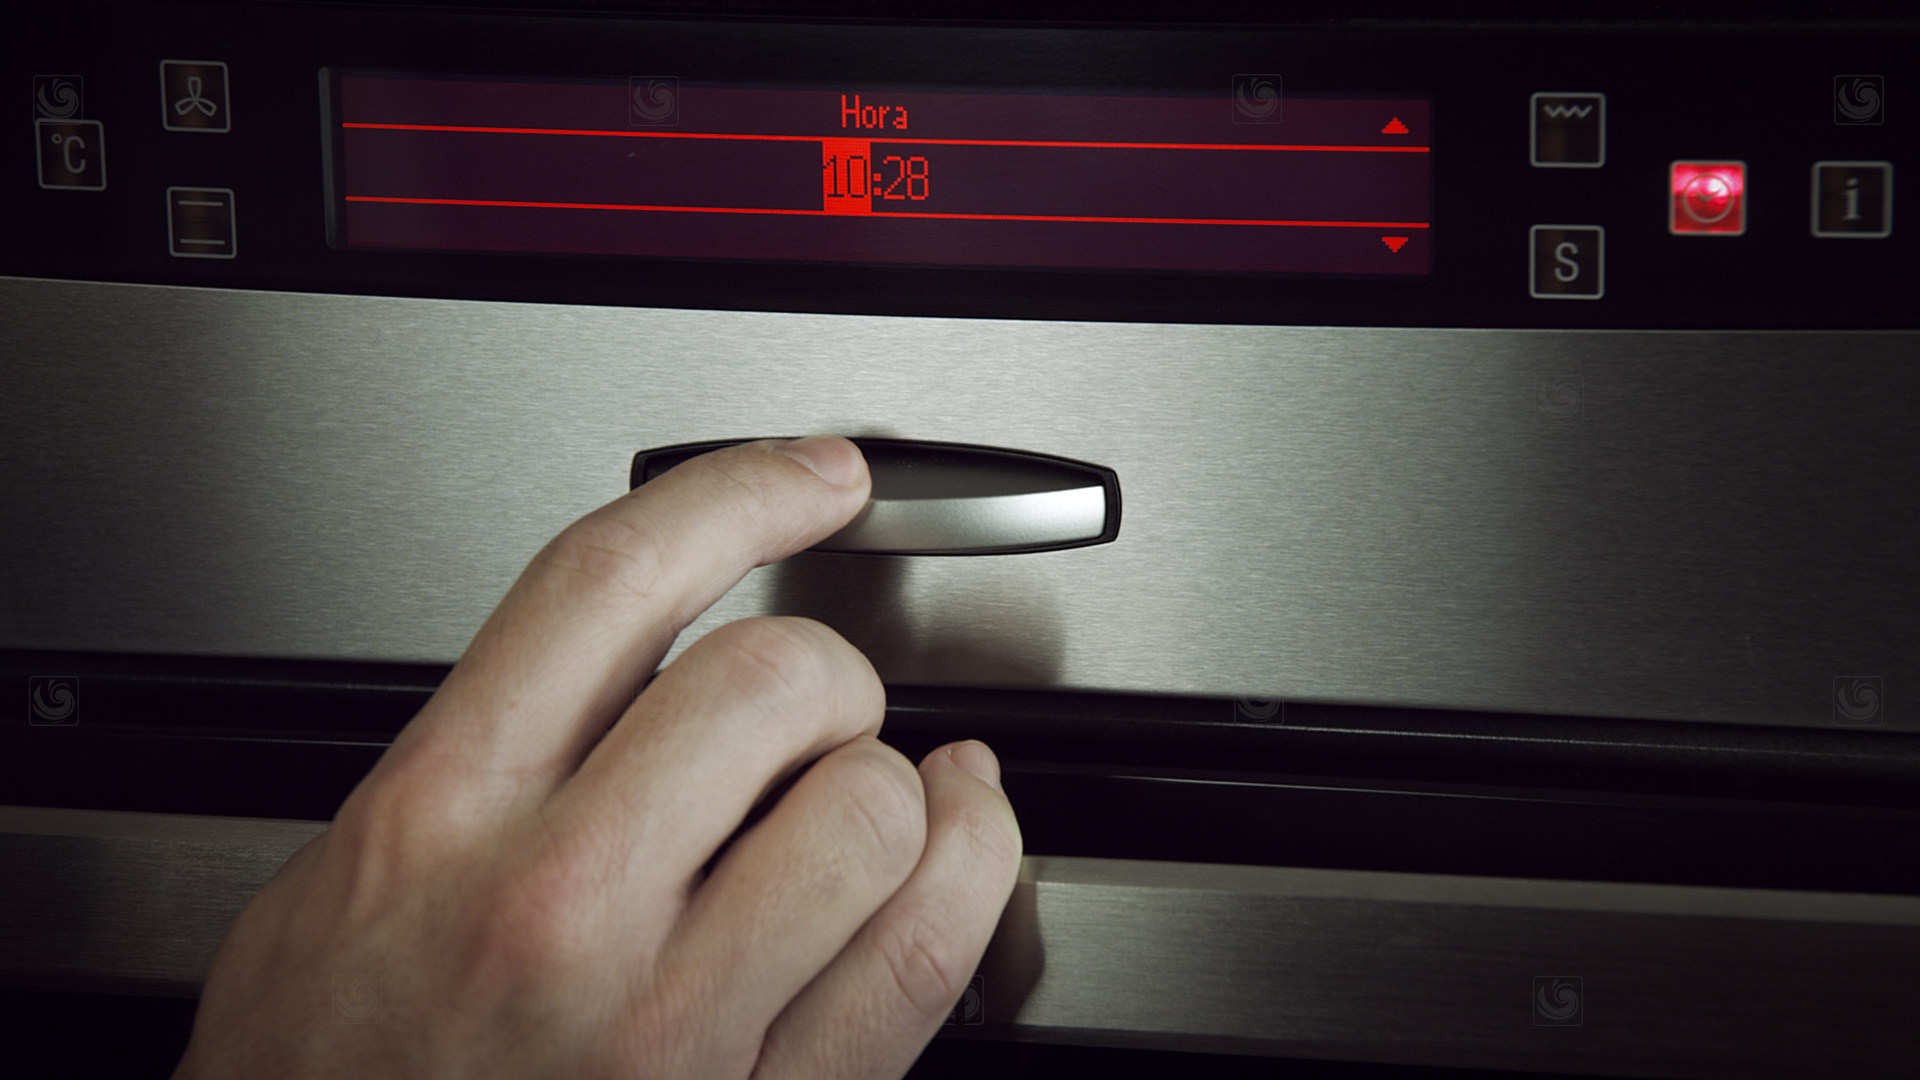 Fotograma de vídeo de producto entorno a hornos Neff, mostrando un detalle del mando de control de temperatura